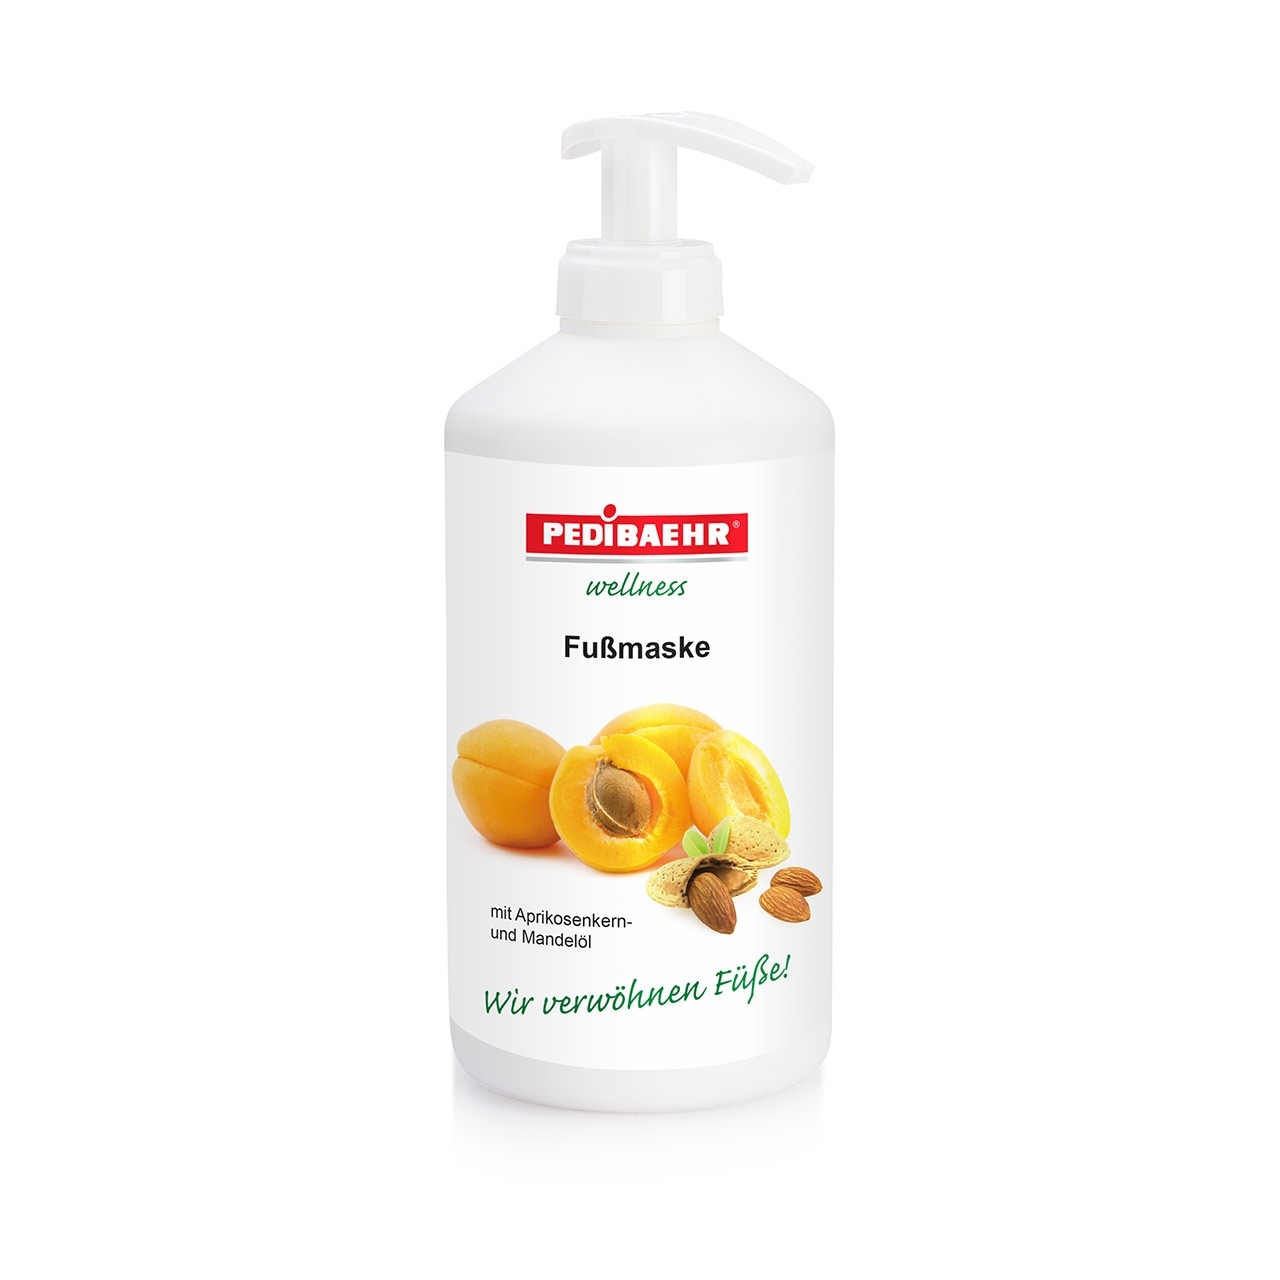 PEDIBAEHR Wellness Fußmaske mit Aprikosenkern- und Mandelöl | 500 ml